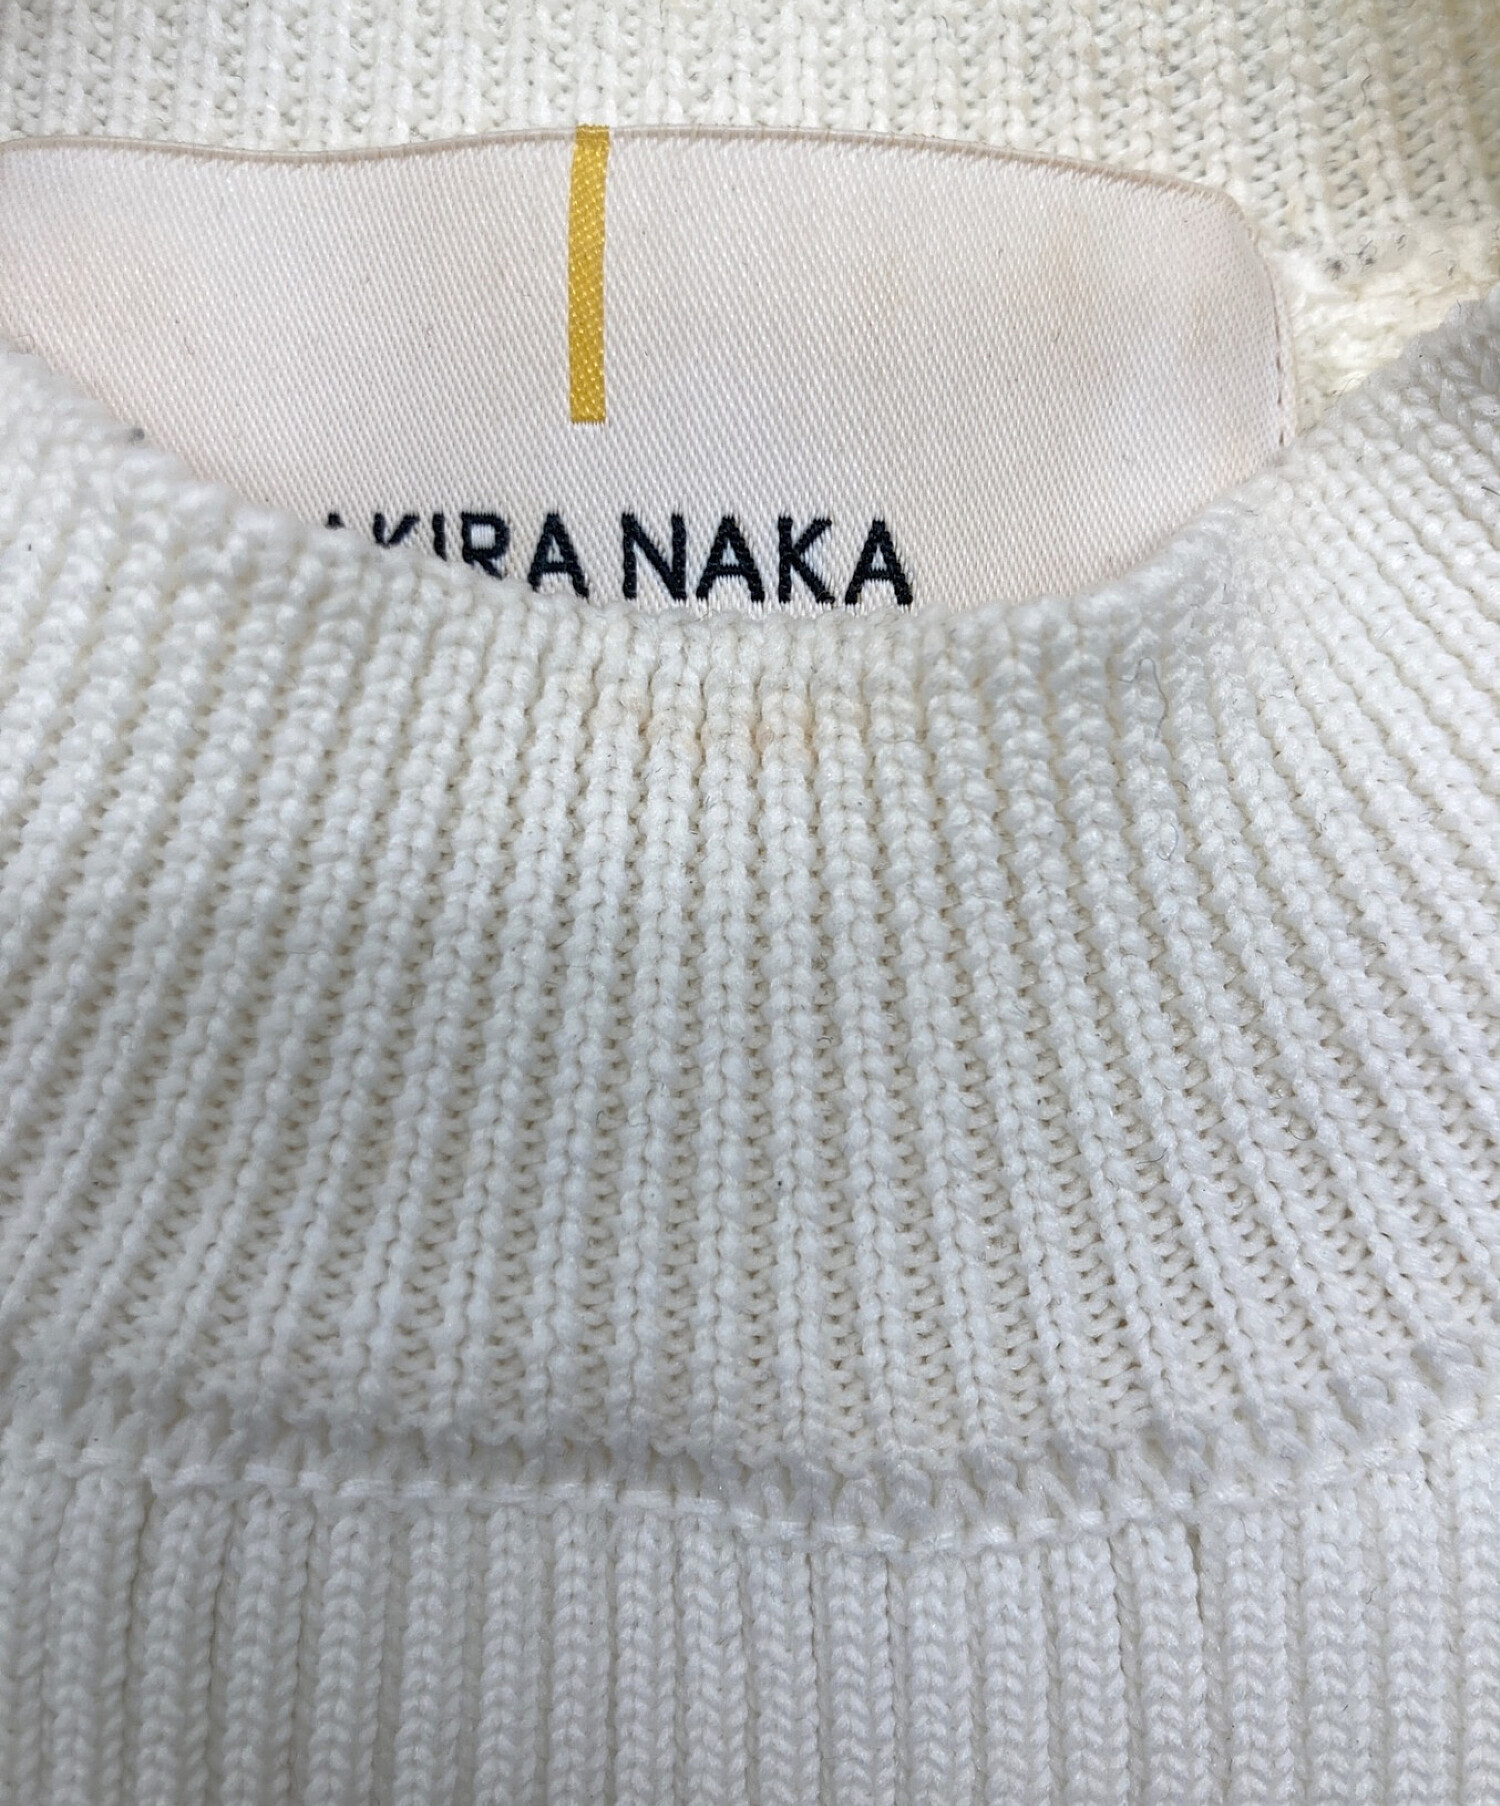 中古・古着通販】AKIRA NAKA (アキラナカ) Ayaデザインニット ホワイト